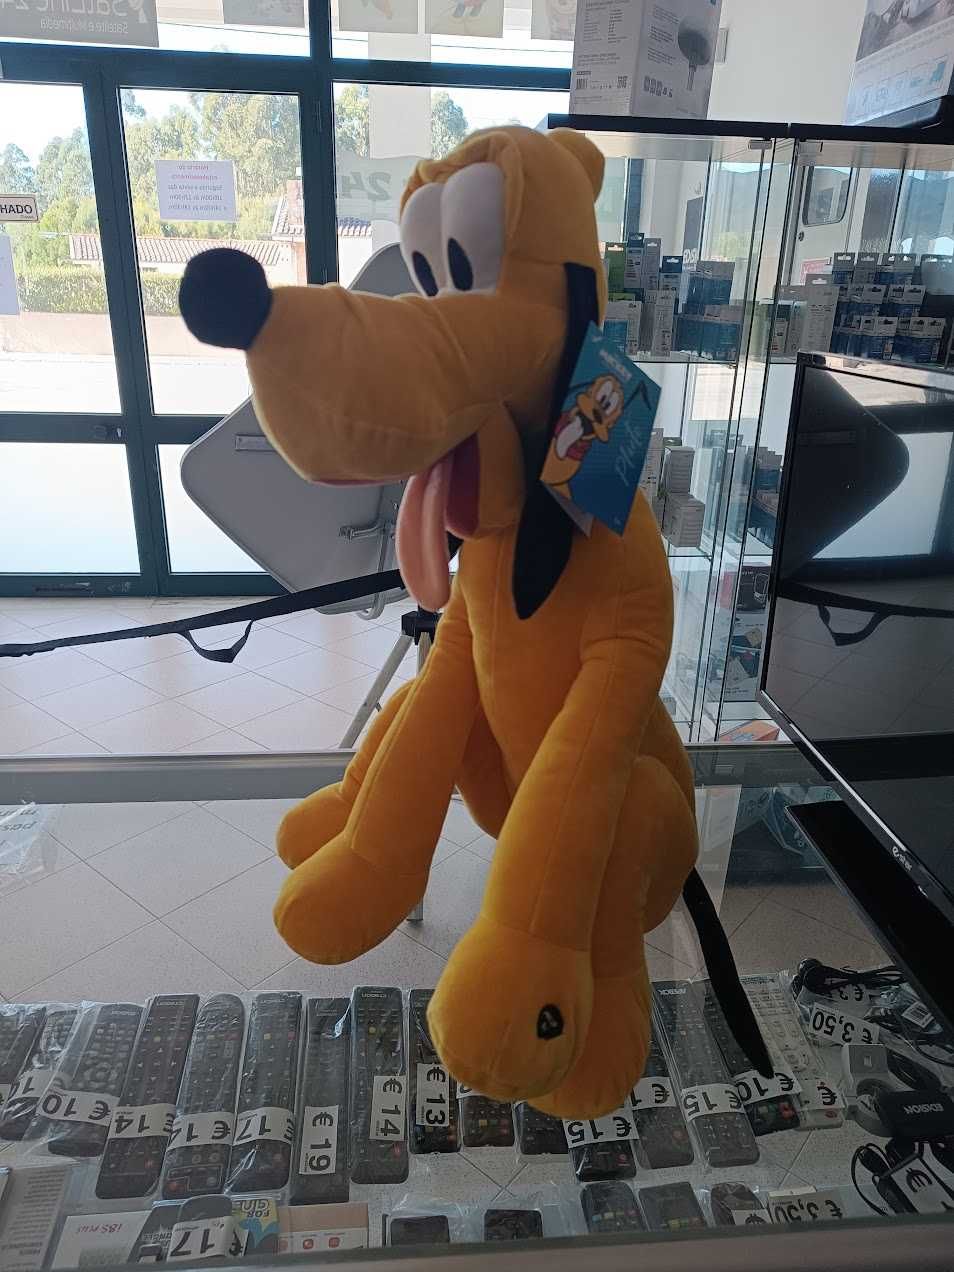 PROMO:Peluche Disney Pluto 50cm com som